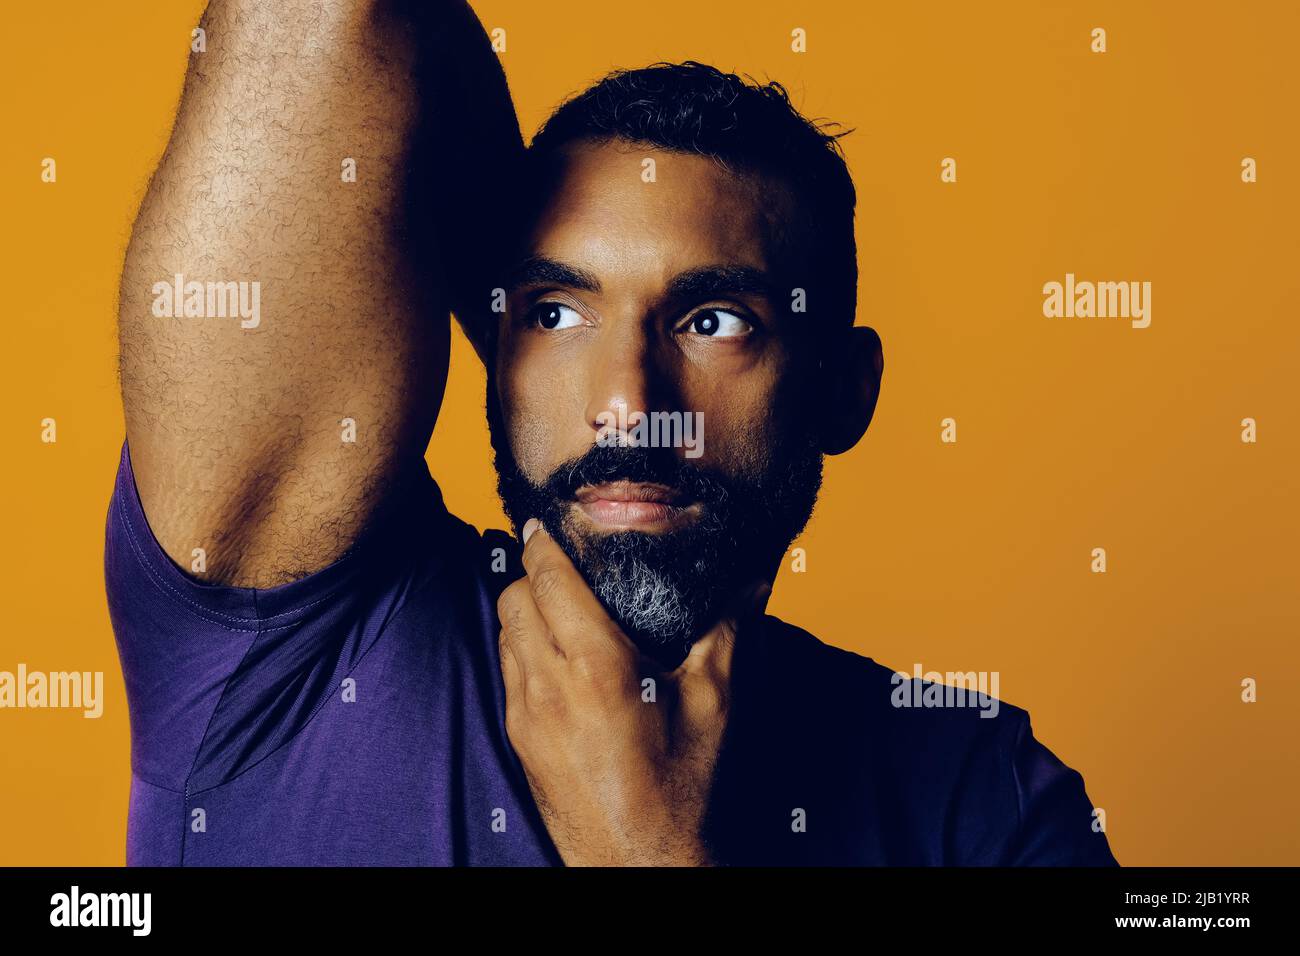 primer plano de un hombre adulto sensible con barba y una mano de bigote en la barbilla mirando hacia el estudio amarillo del espacio de copia Foto de stock